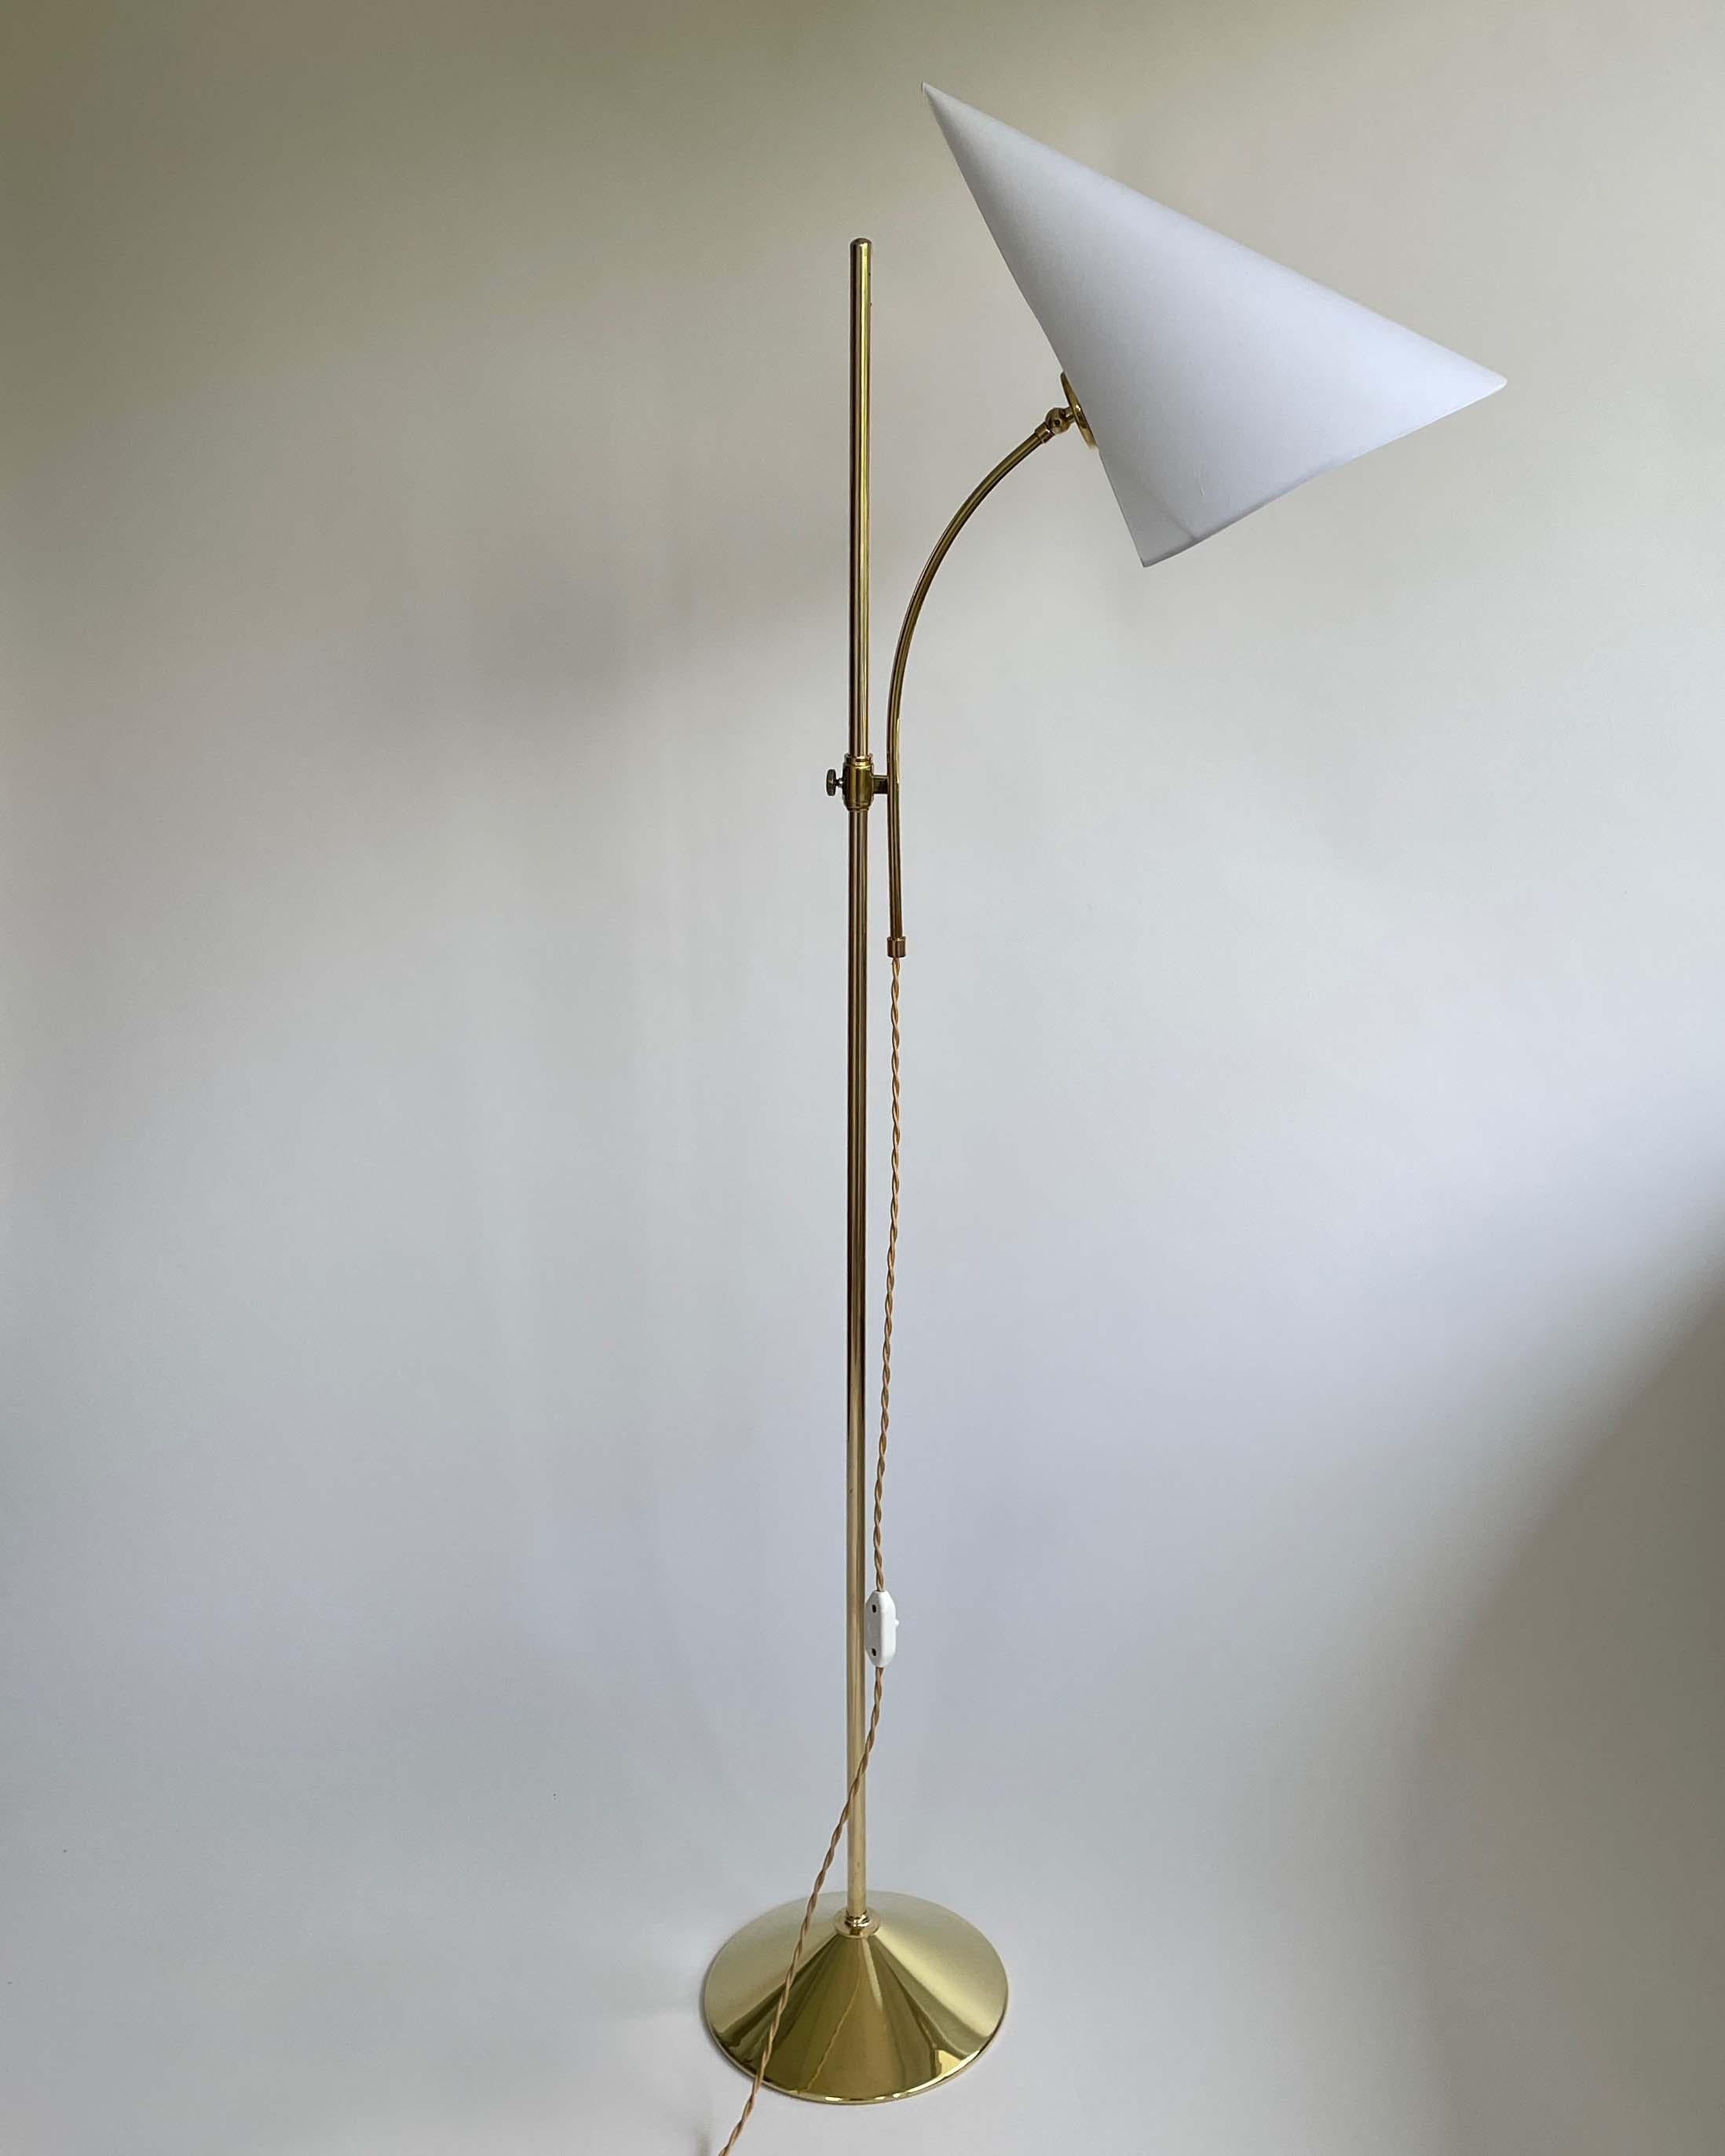 Ce lampadaire inhabituel The Scandinavian Modern a été conçu et fabriqué en Suède dans les années 1950. Elle est dotée d'une base en laiton et d'un abat-jour en coton blanc réglable en hauteur. 

La lampe nécessite une ampoule E27 jusqu'à 60 Watt